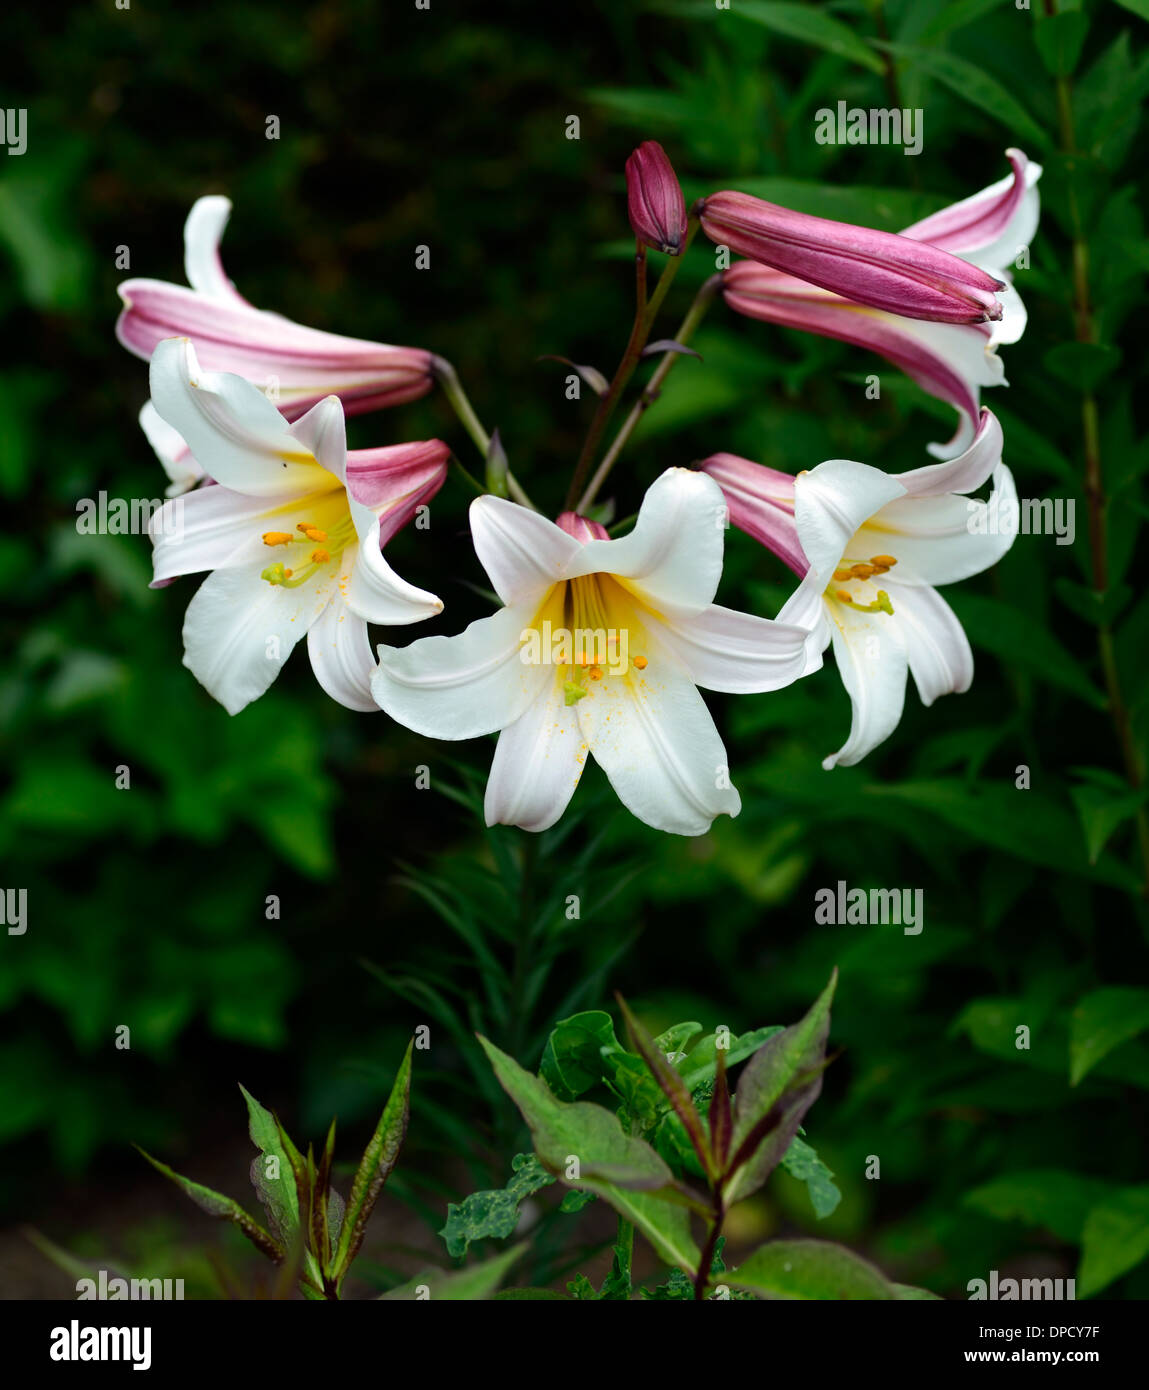 Il Lilium regale regal lily gigli tromba bianco fiore fiori fioritura profumate fioriture profumi profumo fragrante Foto Stock